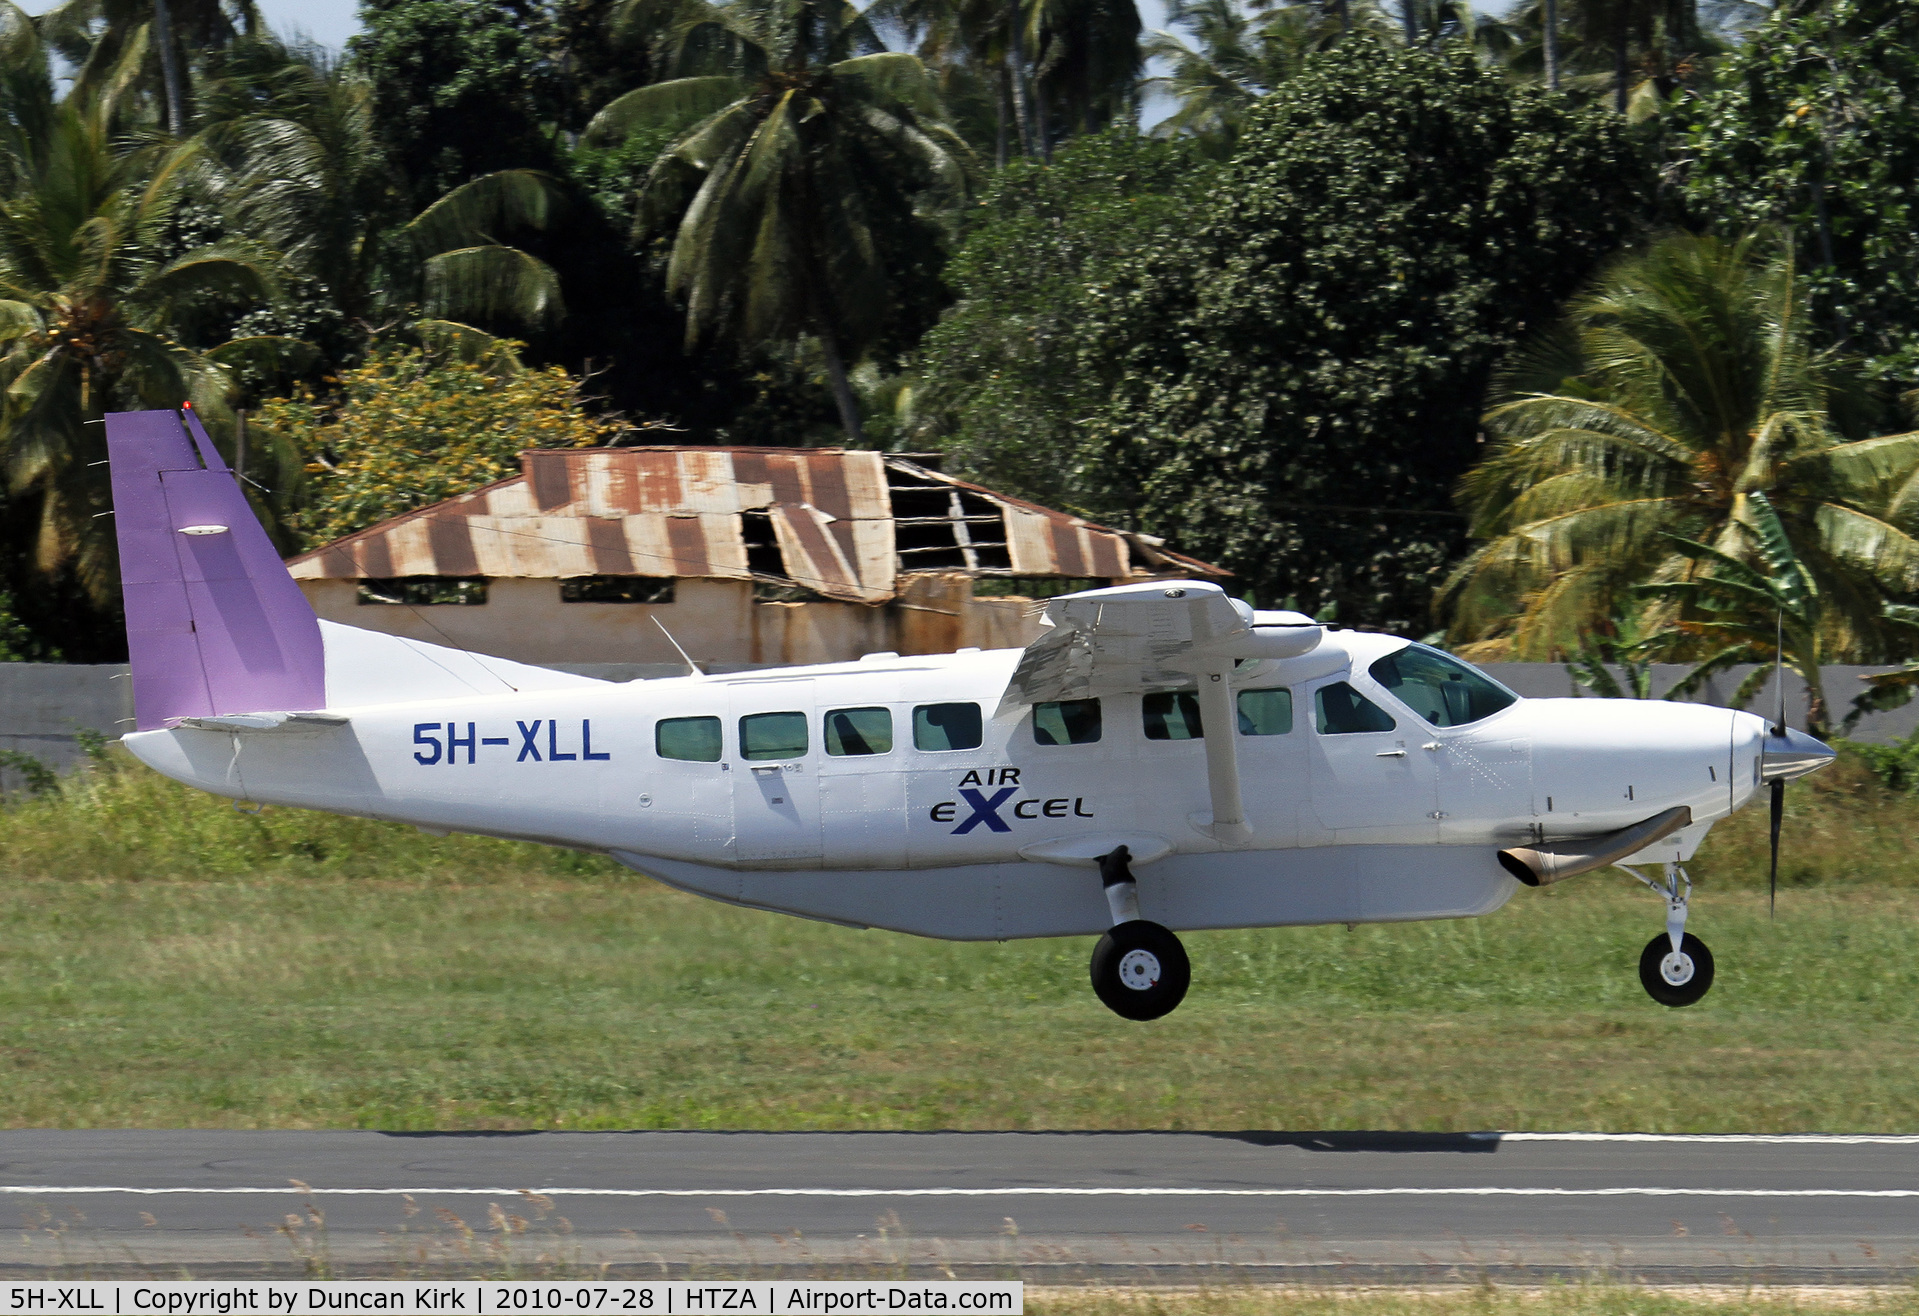 5H-XLL, 2006 Cessna 208B Grand Caravan C/N 208B-1192, Air Excel Caravan landing at Zanzibar